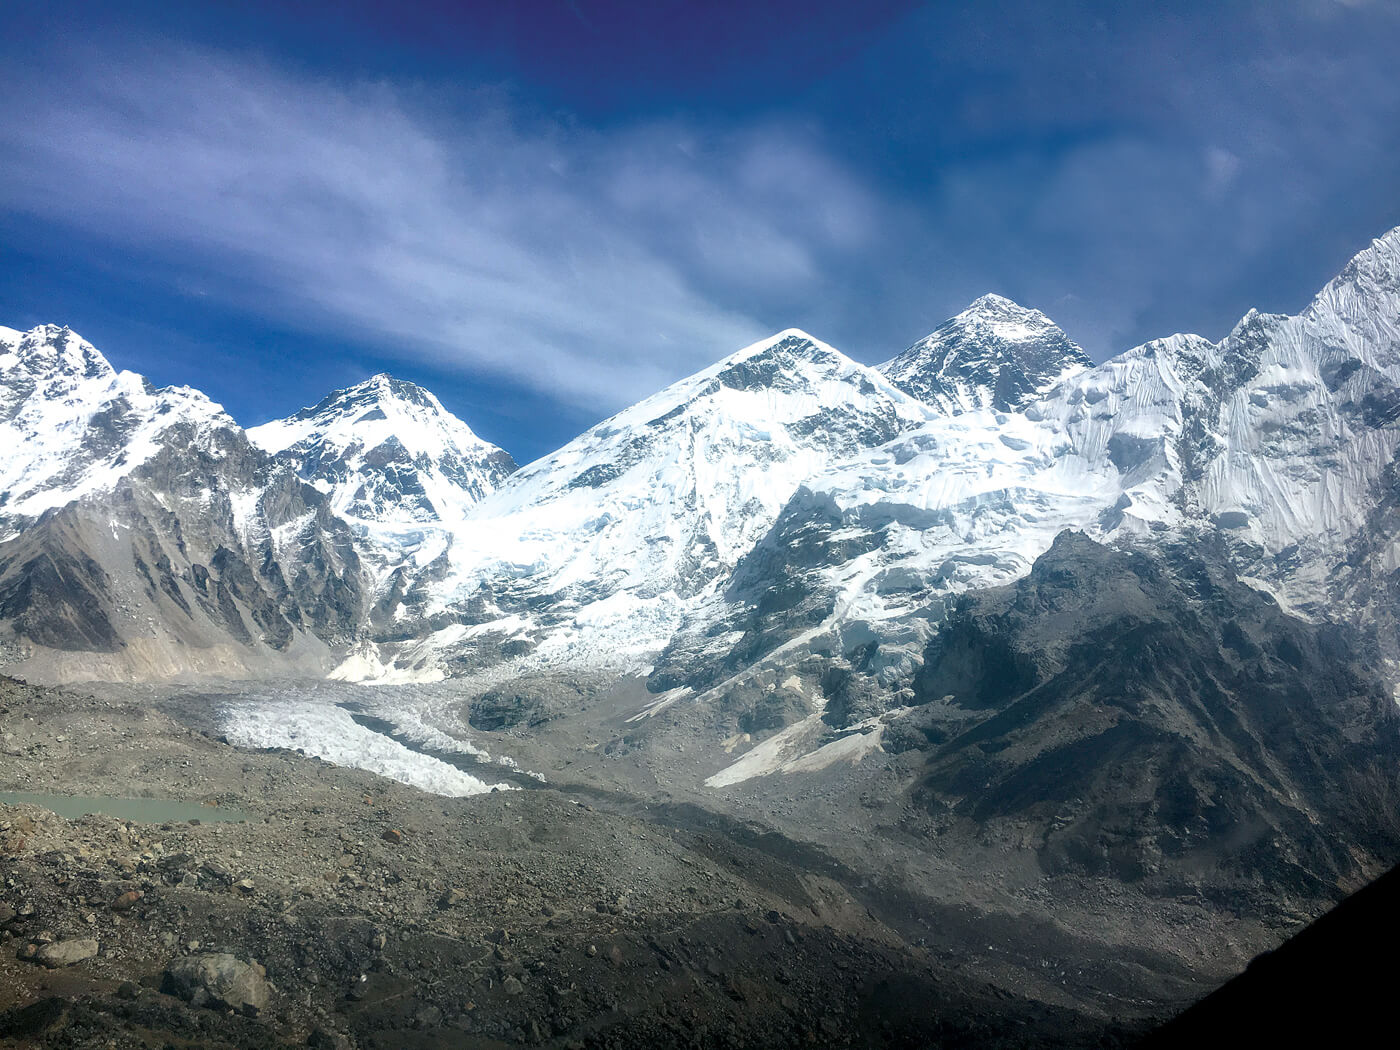 Ледник Кхумбу - самый высокий в мире, однако и он отступает со скоростью примерно 30 м/год. <br>Сегодня базовый лагерь альпинистов на Эвересте расположен на 50 метров ниже чем во времена Тенцинга и Хиллари в 1953 году. Фото Kunda Dixit